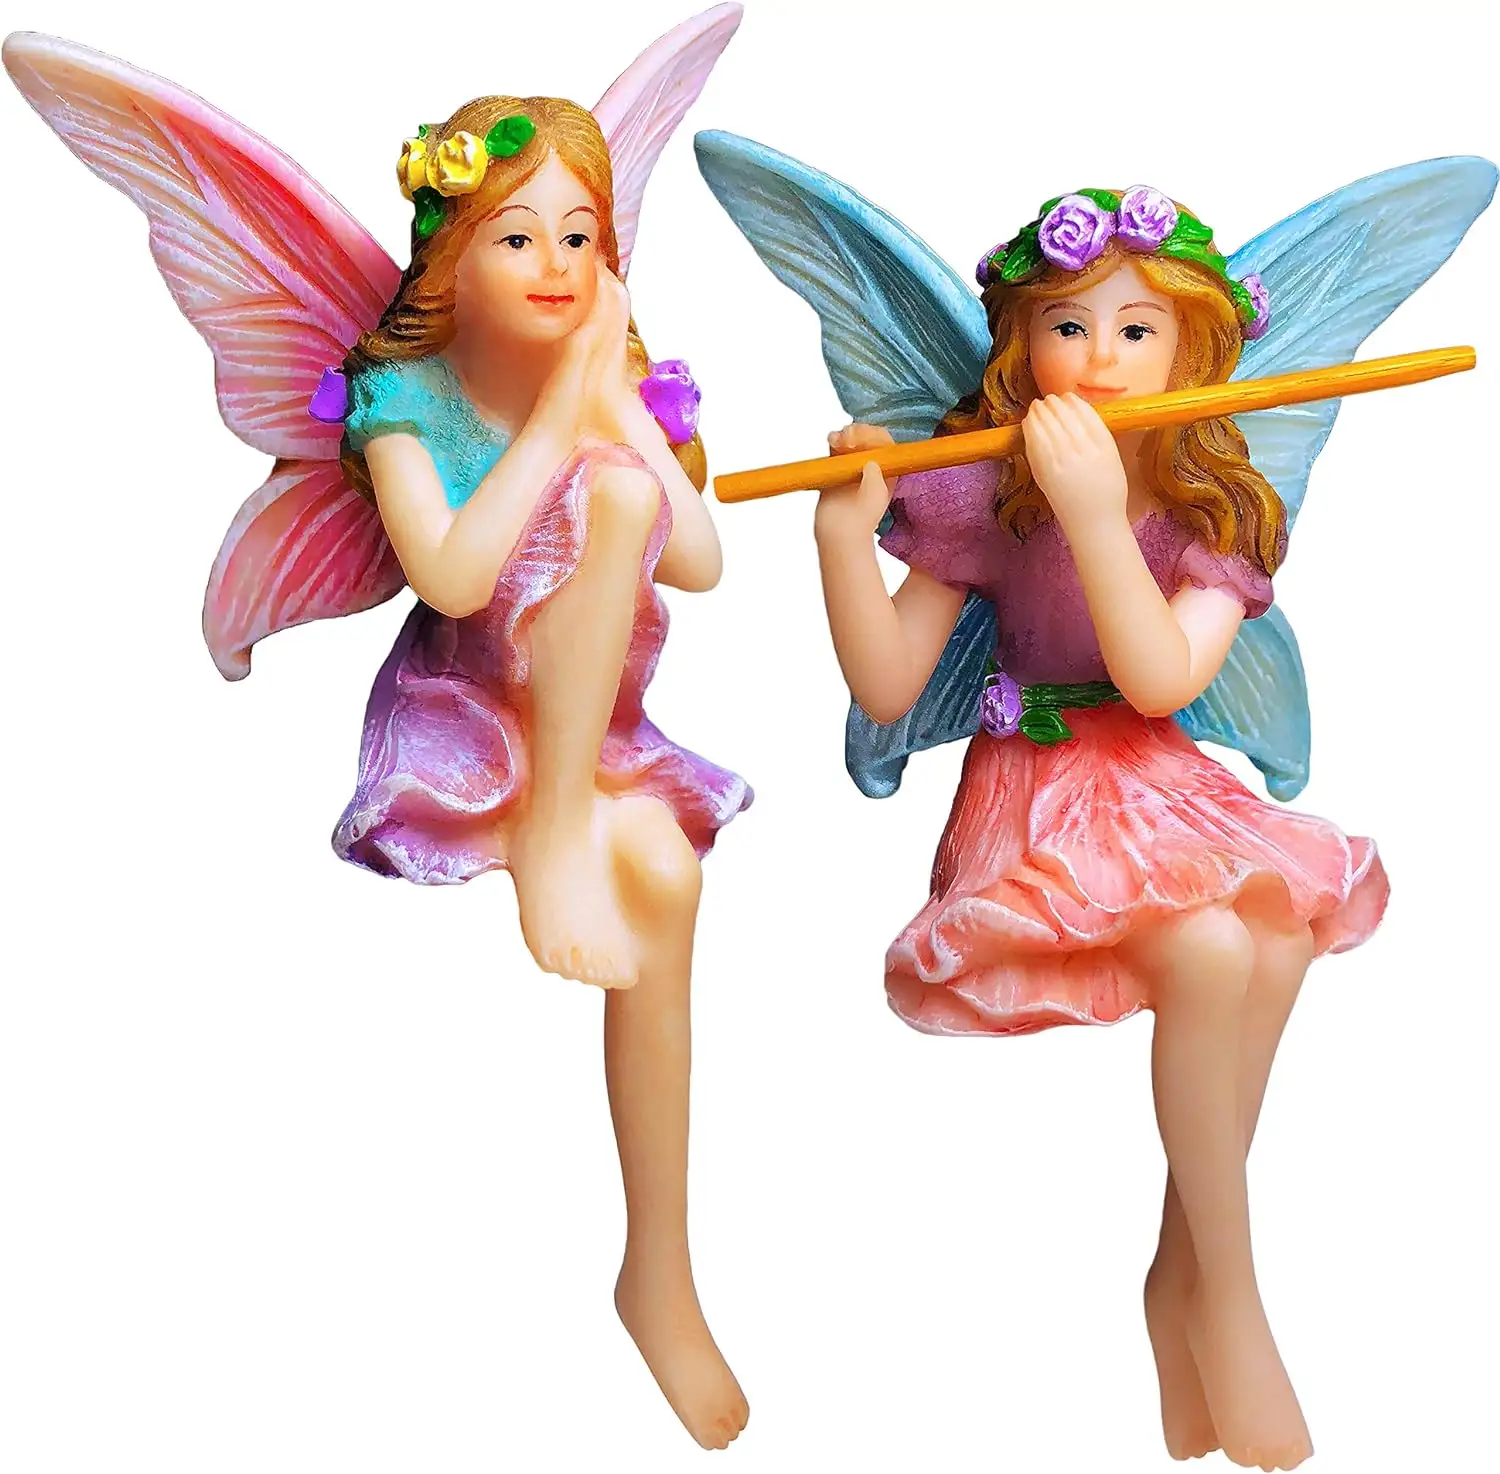 Miniature Garden Fairies Figurines for Outdoor